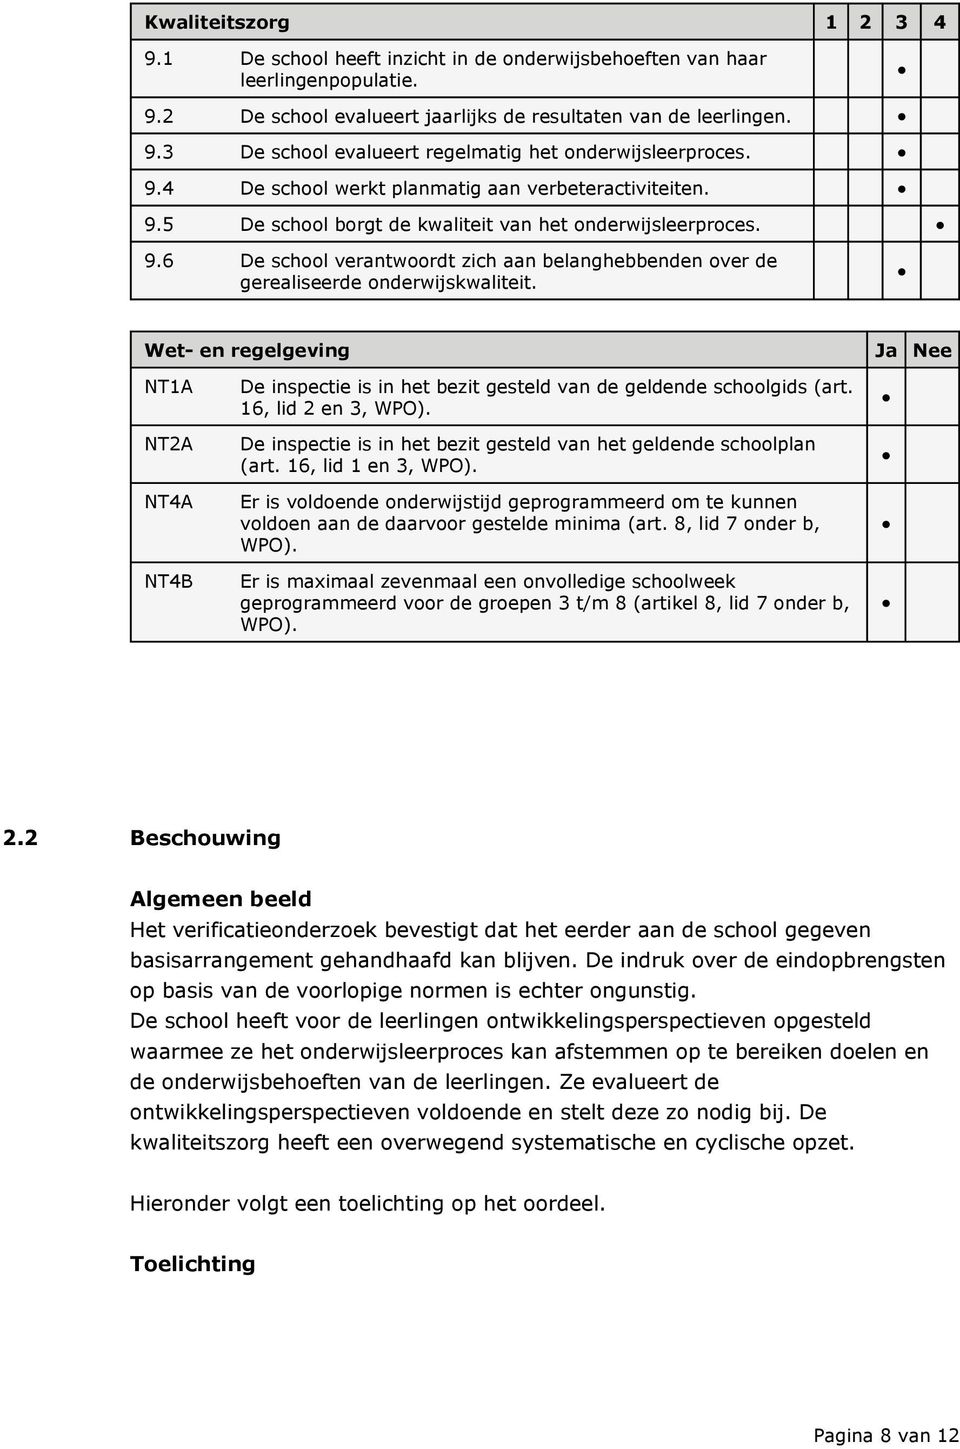 Wet- en regelgeving Ja Nee NT1A NT2A NT4A NT4B De inspectie is in het bezit gesteld van de geldende schoolgids (art. 16, lid 2 en 3, WPO).